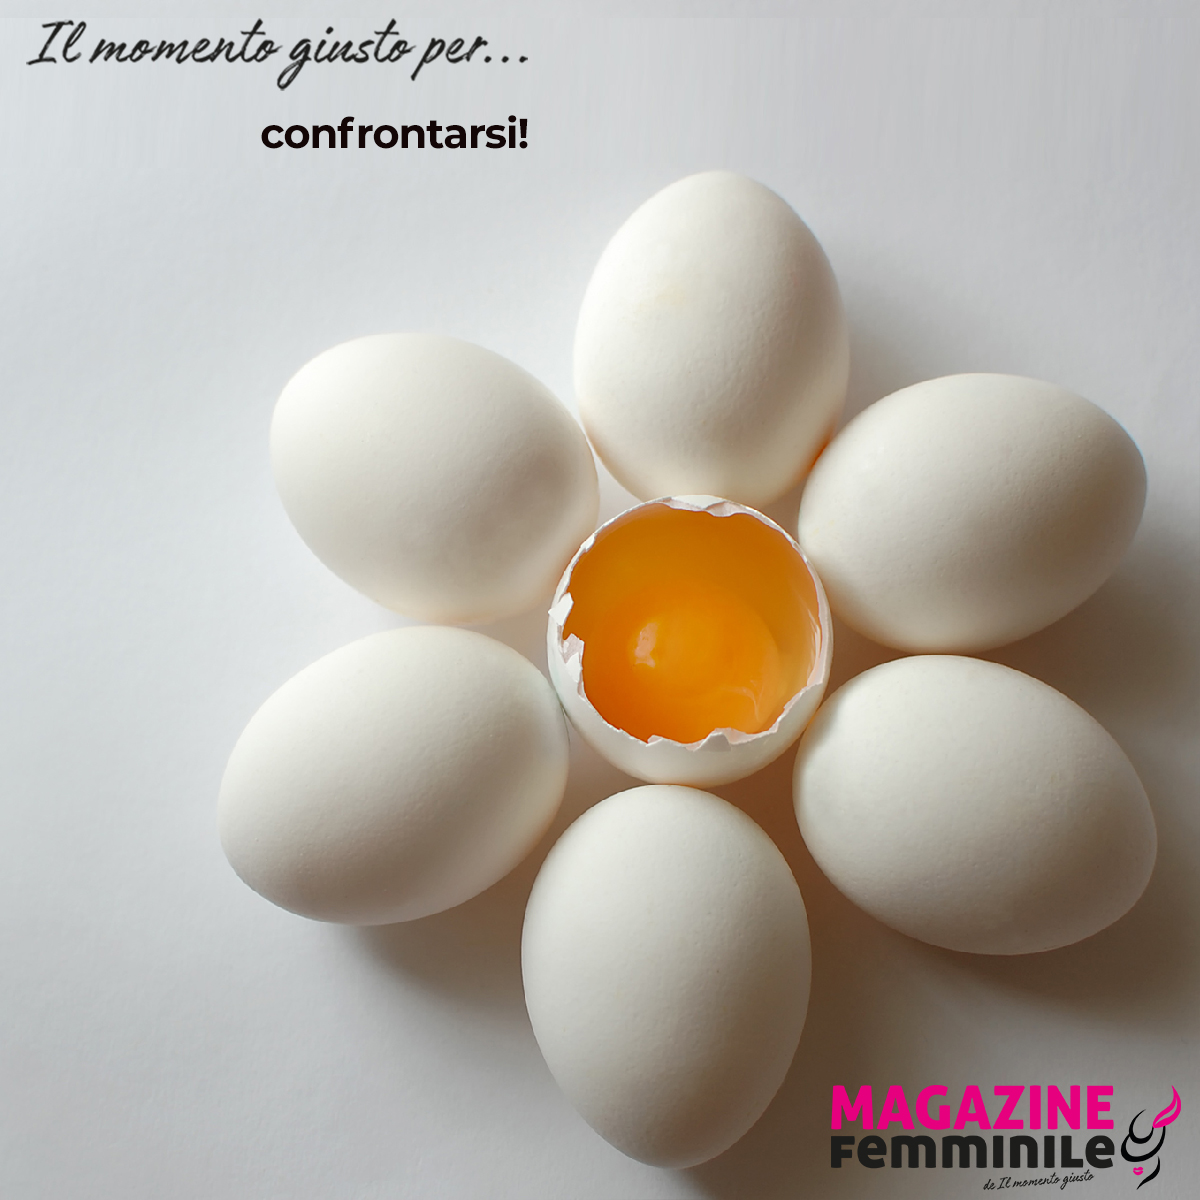 Social egg freezing: nell'immagine un uovo a metà e tante uova intorno al tuorlo